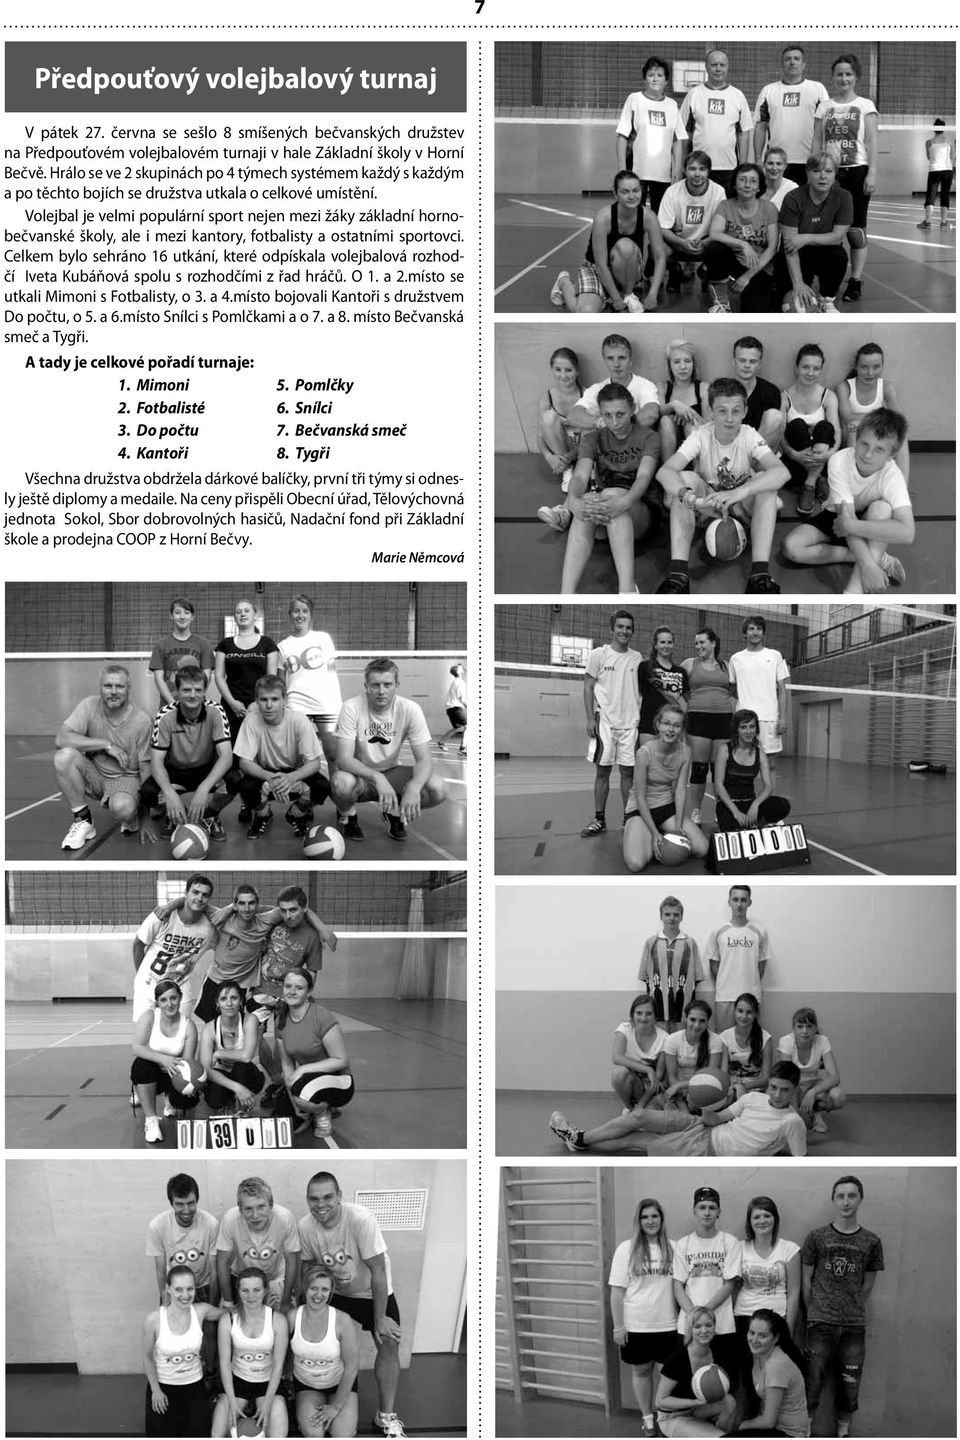 Volejbal je velmi populární sport nejen mezi žáky základní hornobečvanské školy, ale i mezi kantory, fotbalisty a ostatními sportovci.